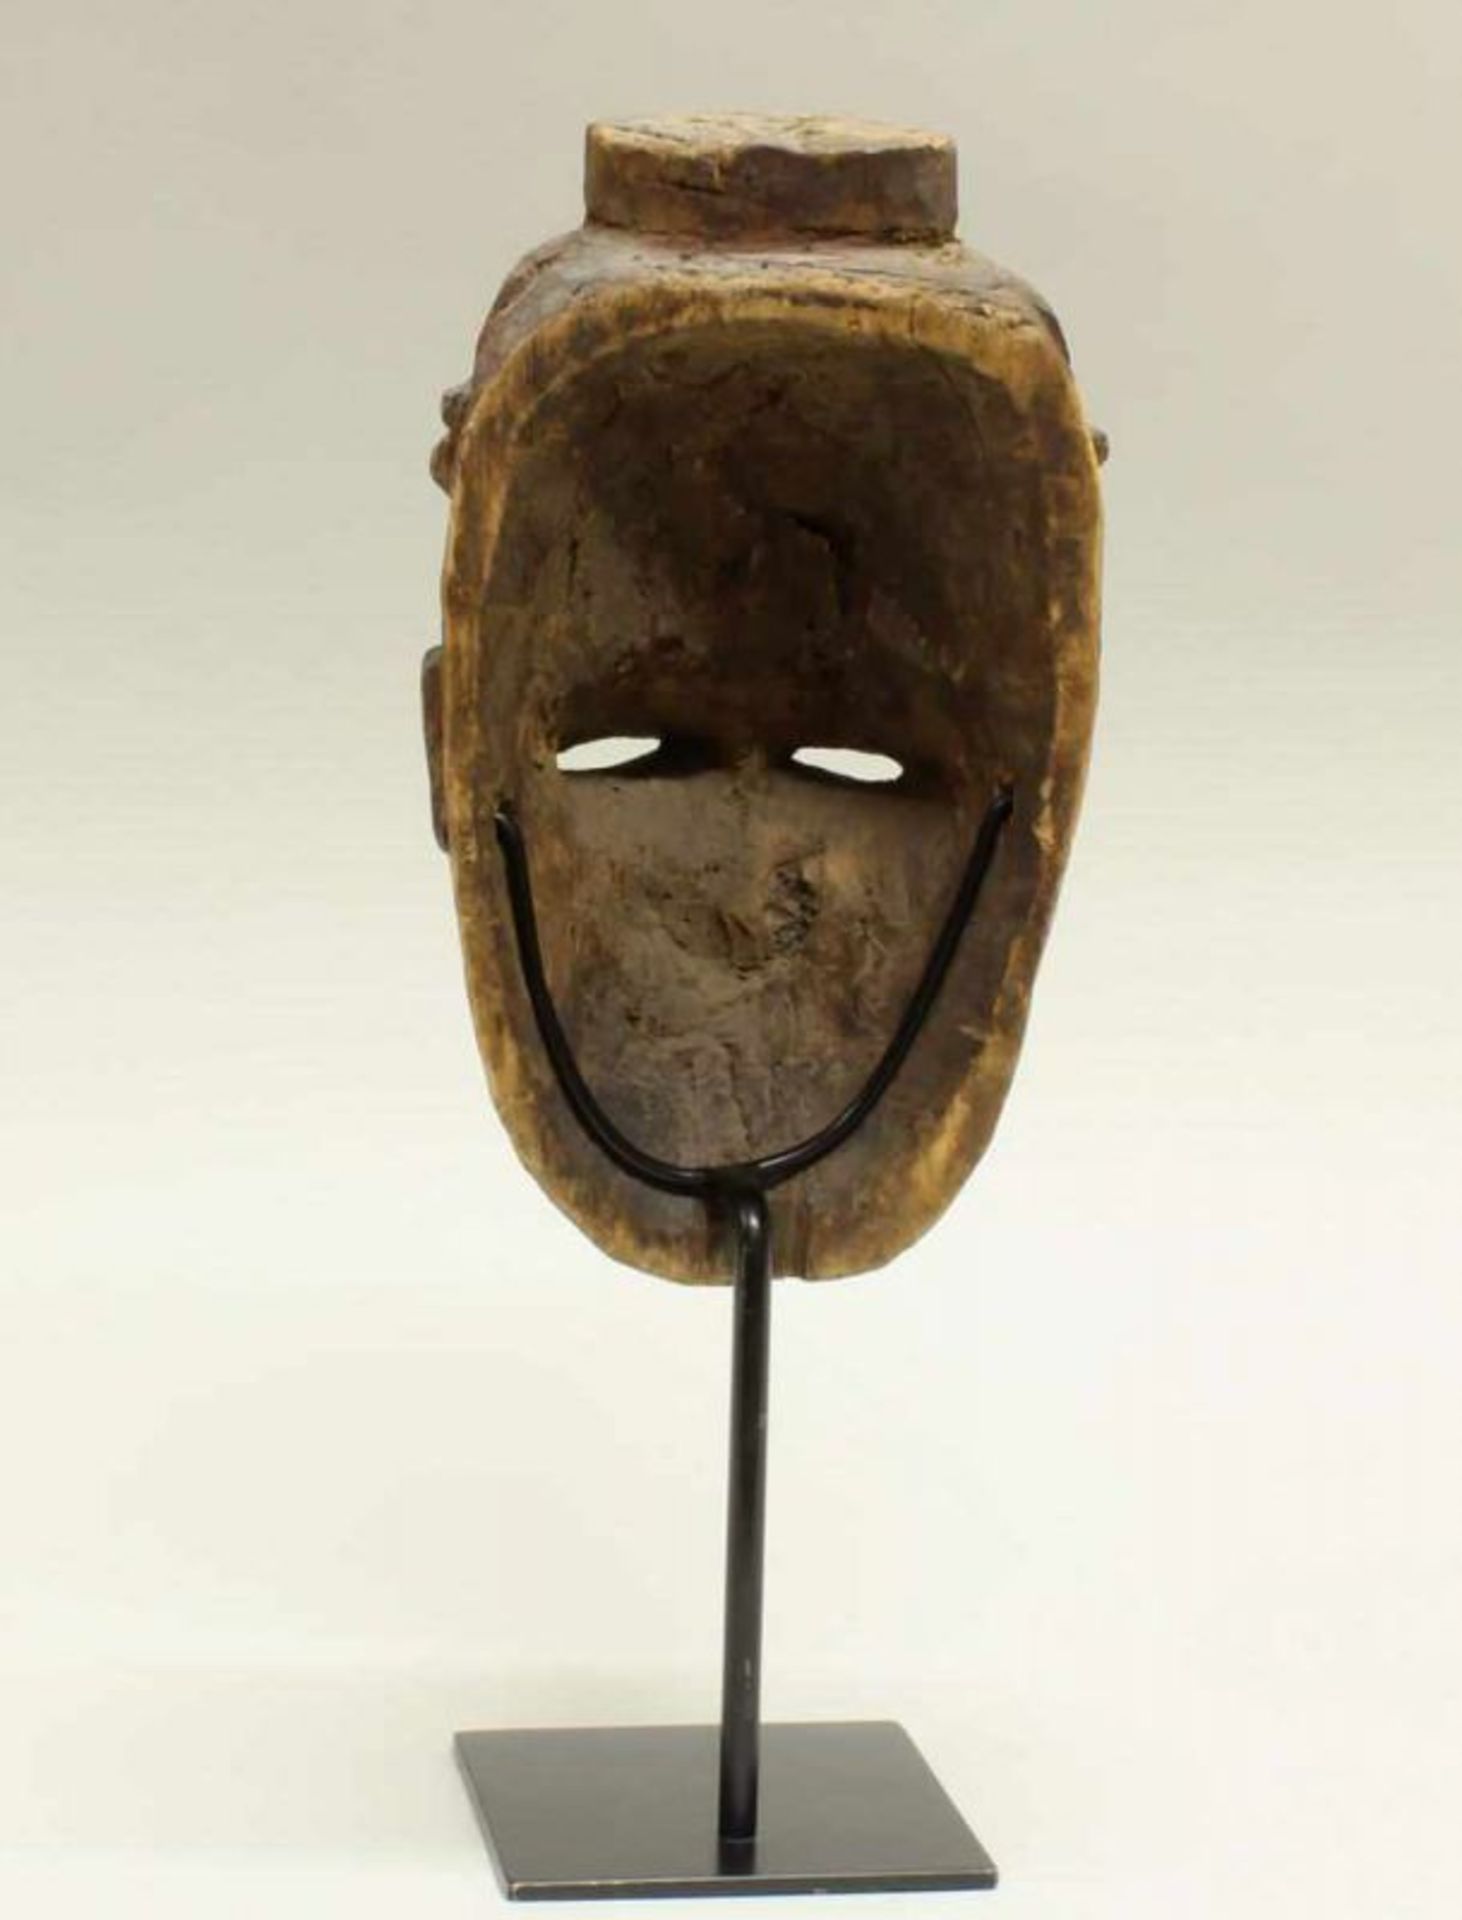 Maske, Ibo, Nigeria, Afrika, authentisch, Holz mit Resten polychromer Bemalung, 25 cm hoch, - Image 3 of 3